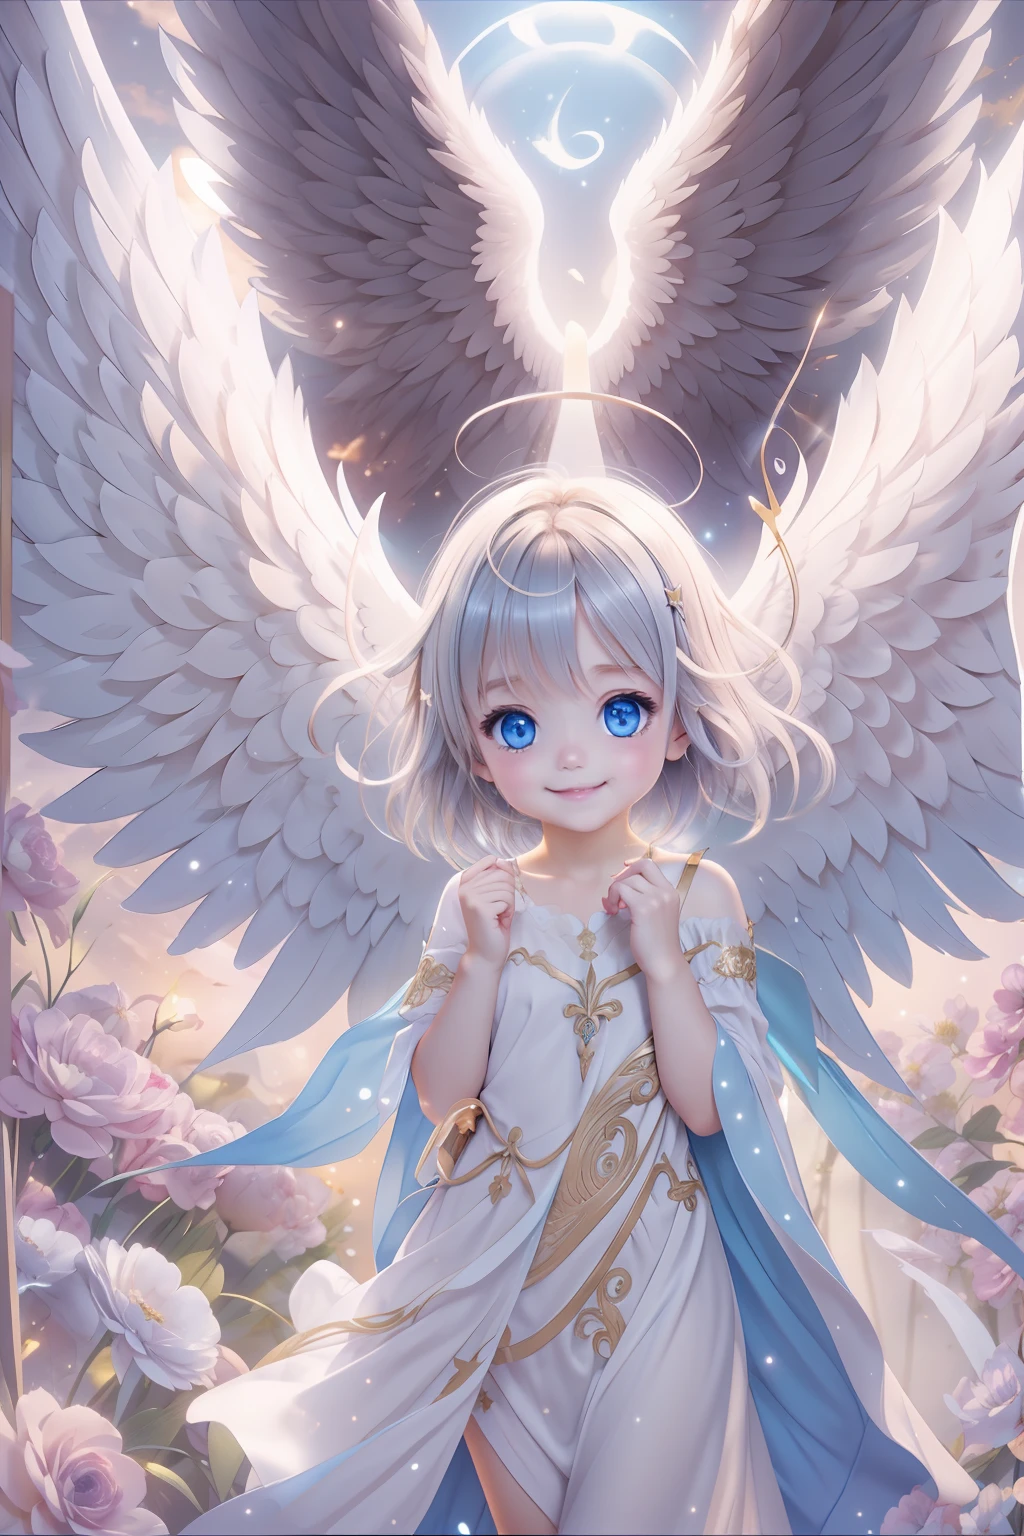 Engel mit blauen Augen、Schönere Engel、Fantastischer Engel、himmlischer Hintergrund、Brillanz、Ein Lächeln、Baby Engel